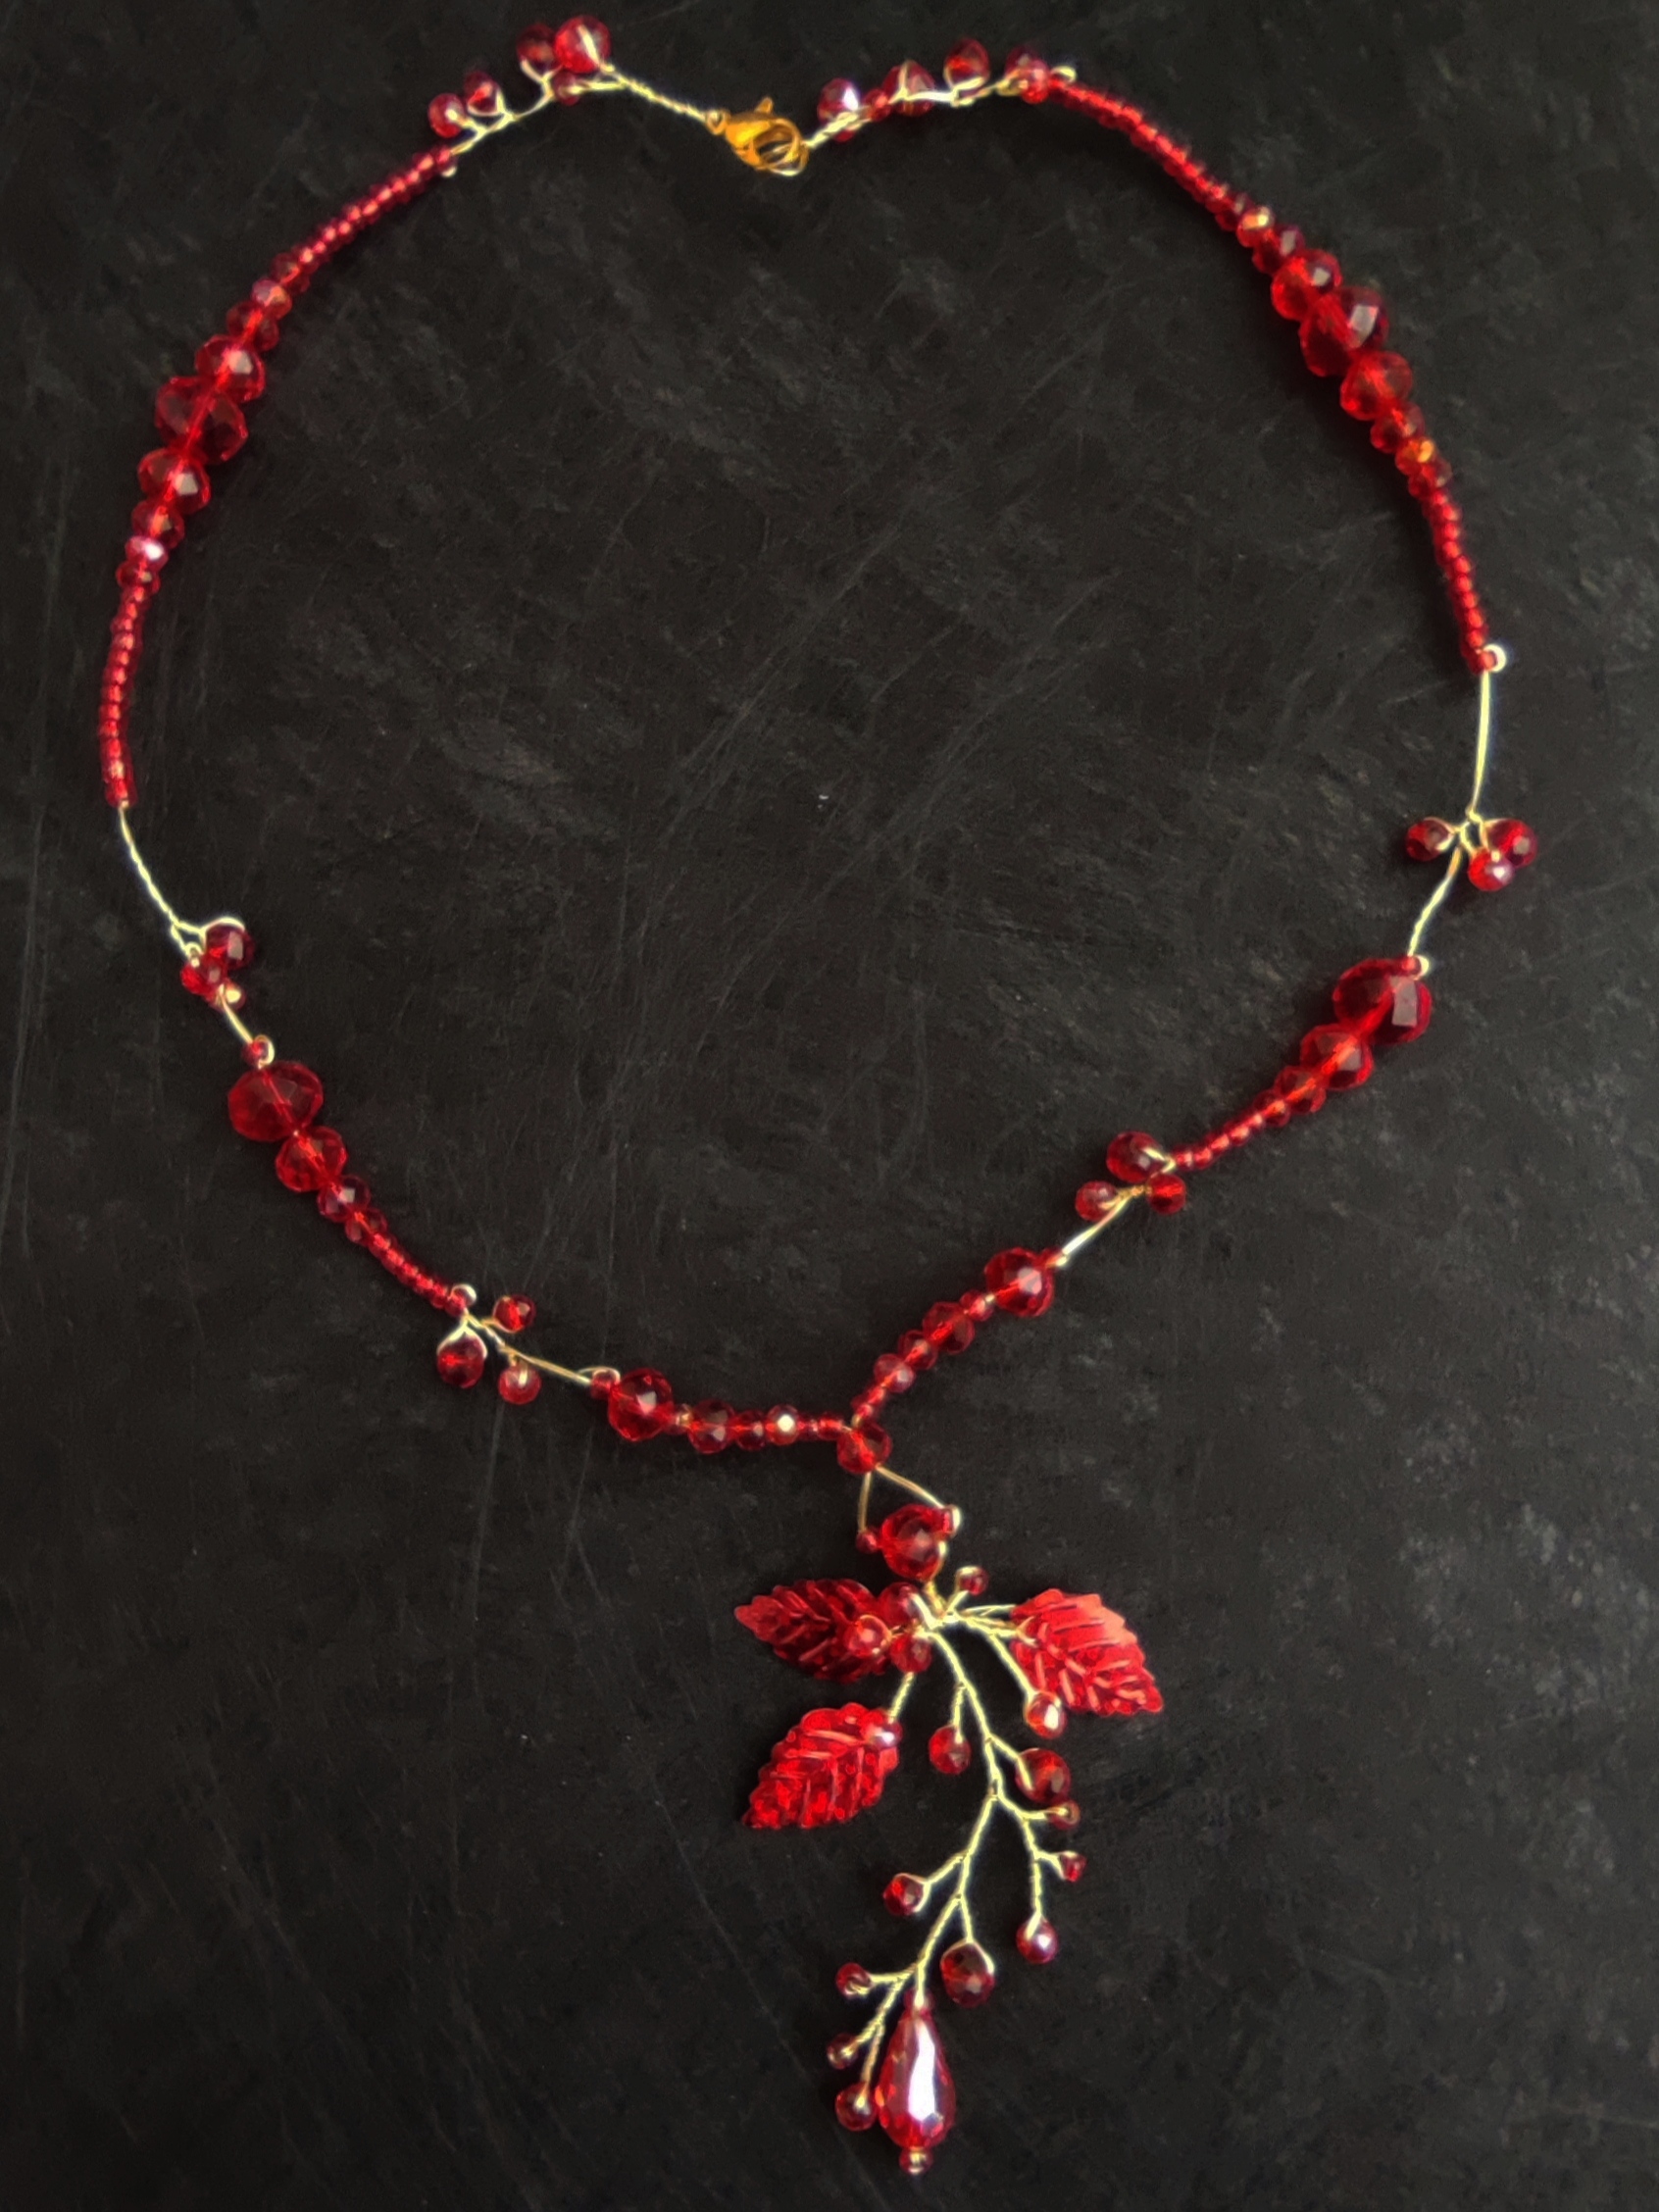 Collier rouge élégant avec feuilles et cristaux - Séduction ardente